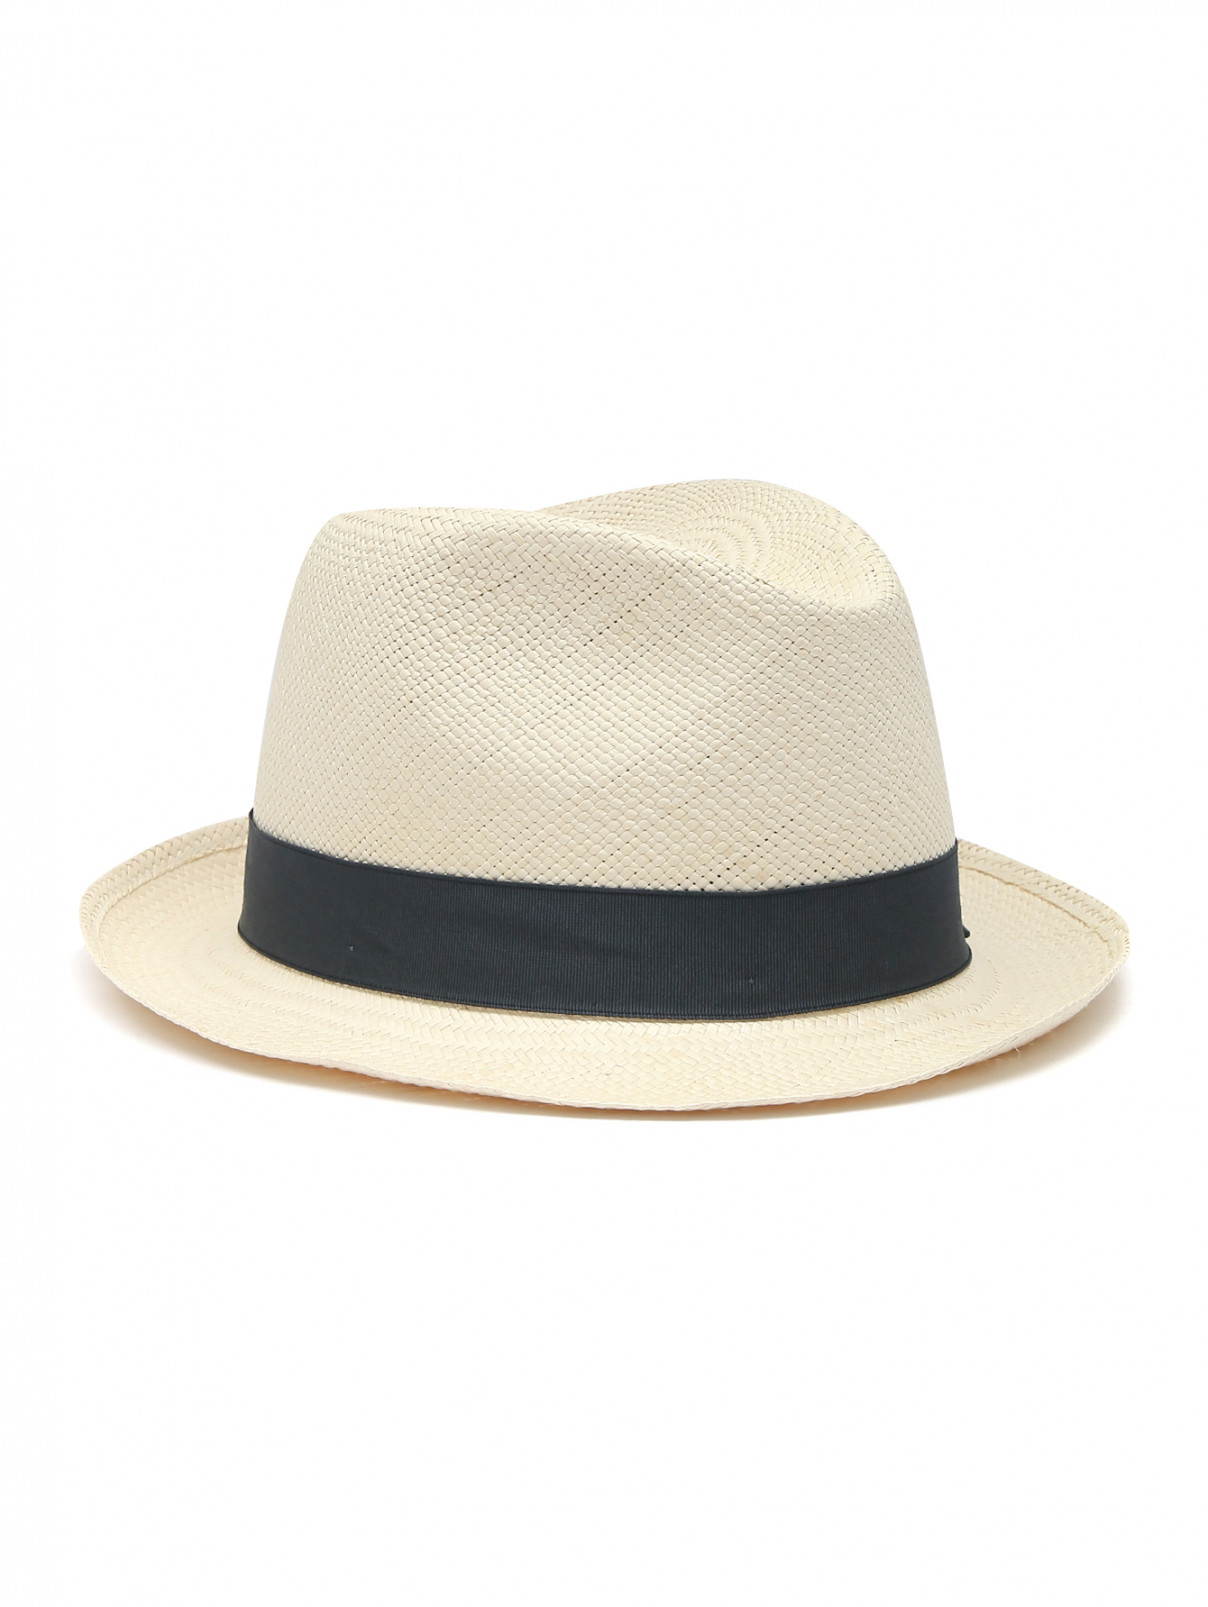 Плетеная шляпа с контрастной лентой Borsalino  –  Общий вид  – Цвет:  Бежевый